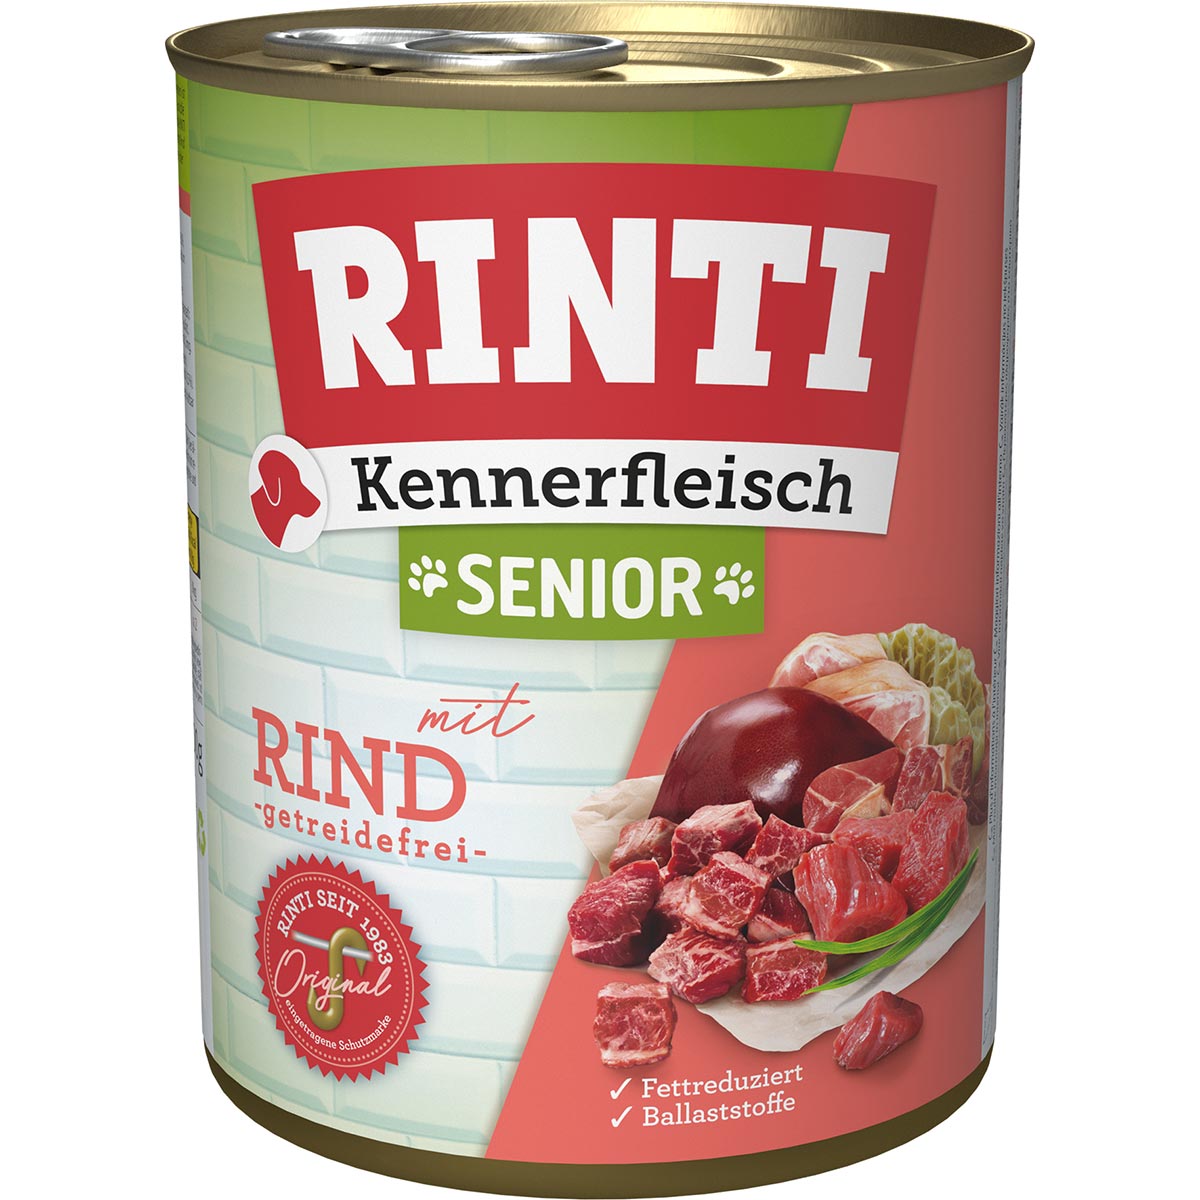 Rinti Kennerfleisch Senior Rind 24x800g von Rinti